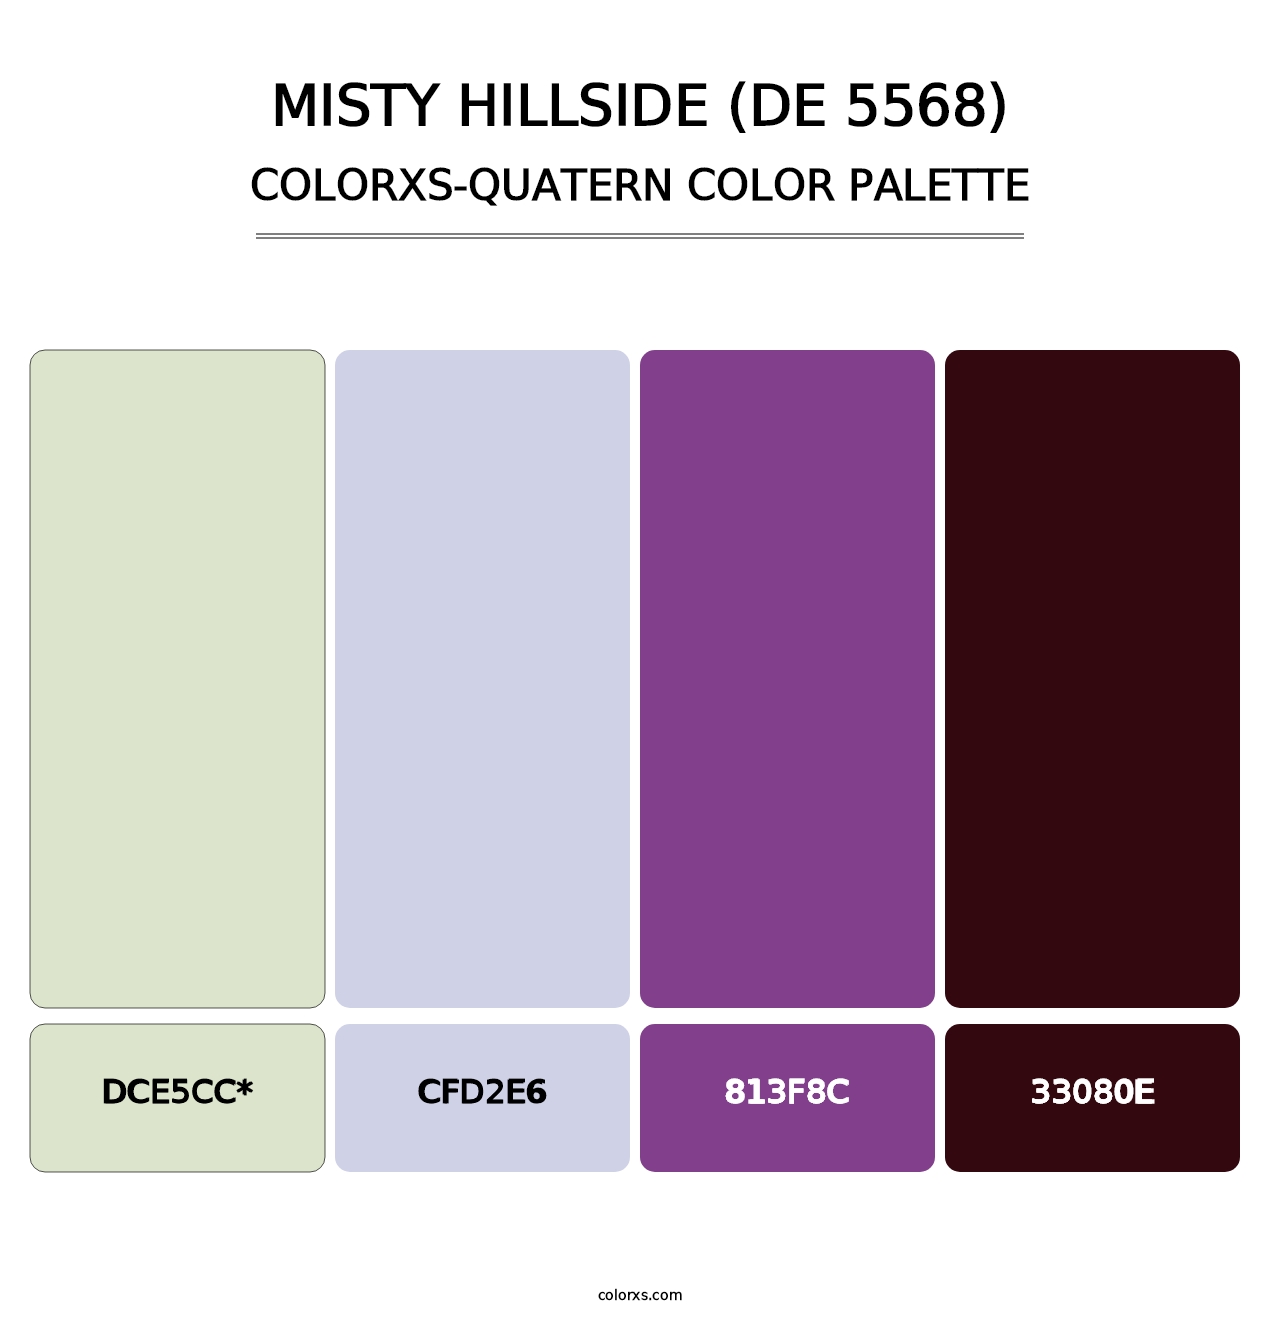 Misty Hillside (DE 5568) - Colorxs Quatern Palette